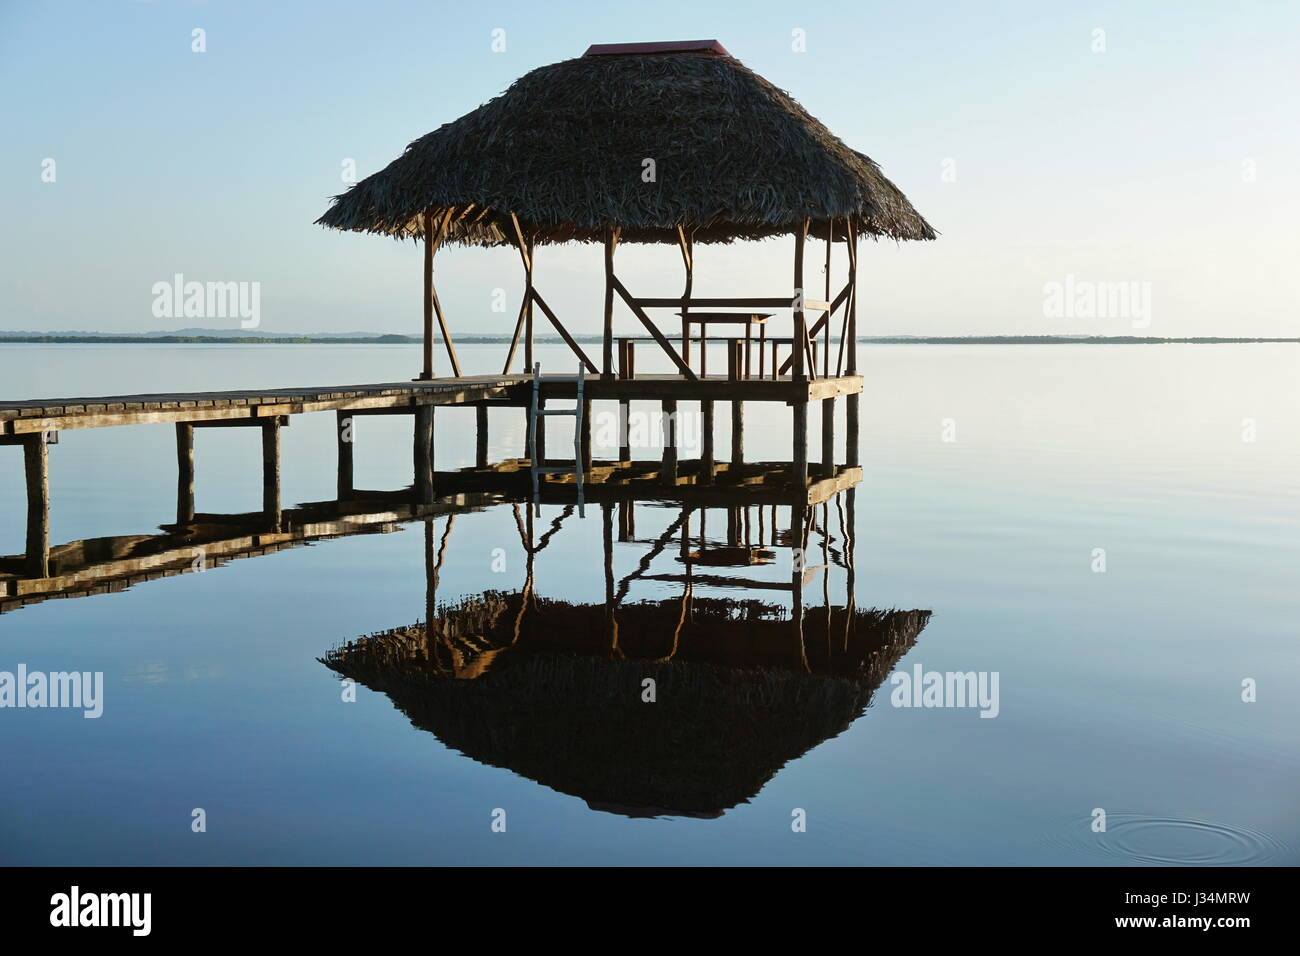 Strohgedeckte Hütte Overwater und seine Reflexion auf ein ruhiges Wasser Oberfläche, Sonnenaufgang Licht, natürliche Szene, Karibik, Panama, Mittelamerika Stockfoto